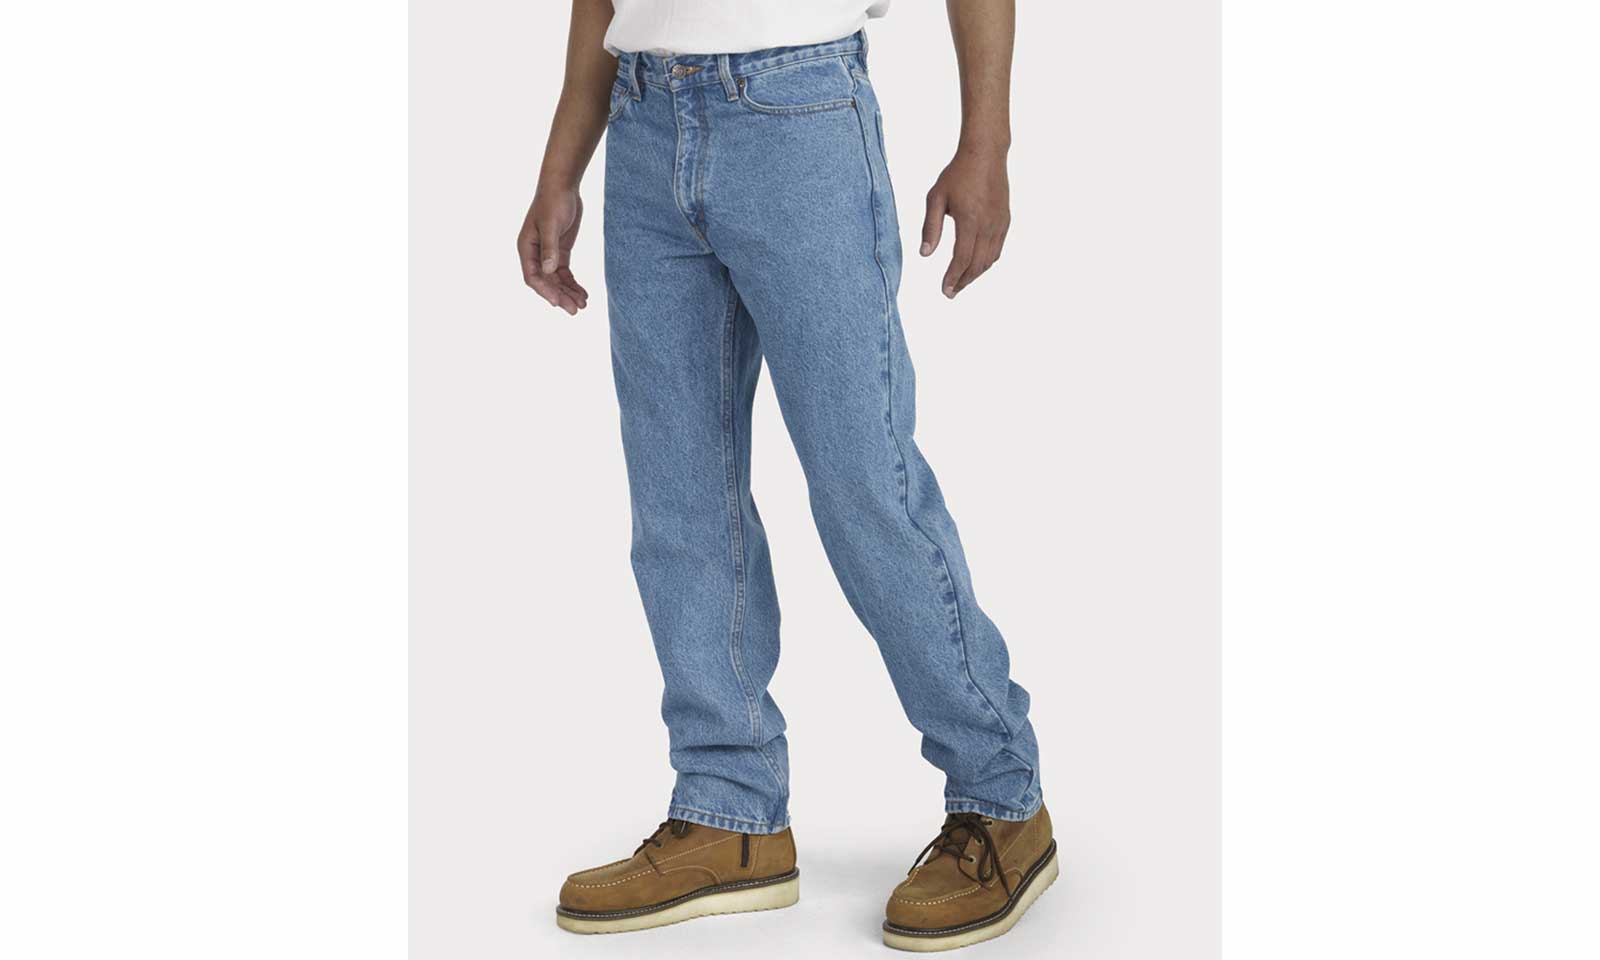 Men's New Jeans 40/34 100% Cotton Light Blue Denim Blowout Sale 